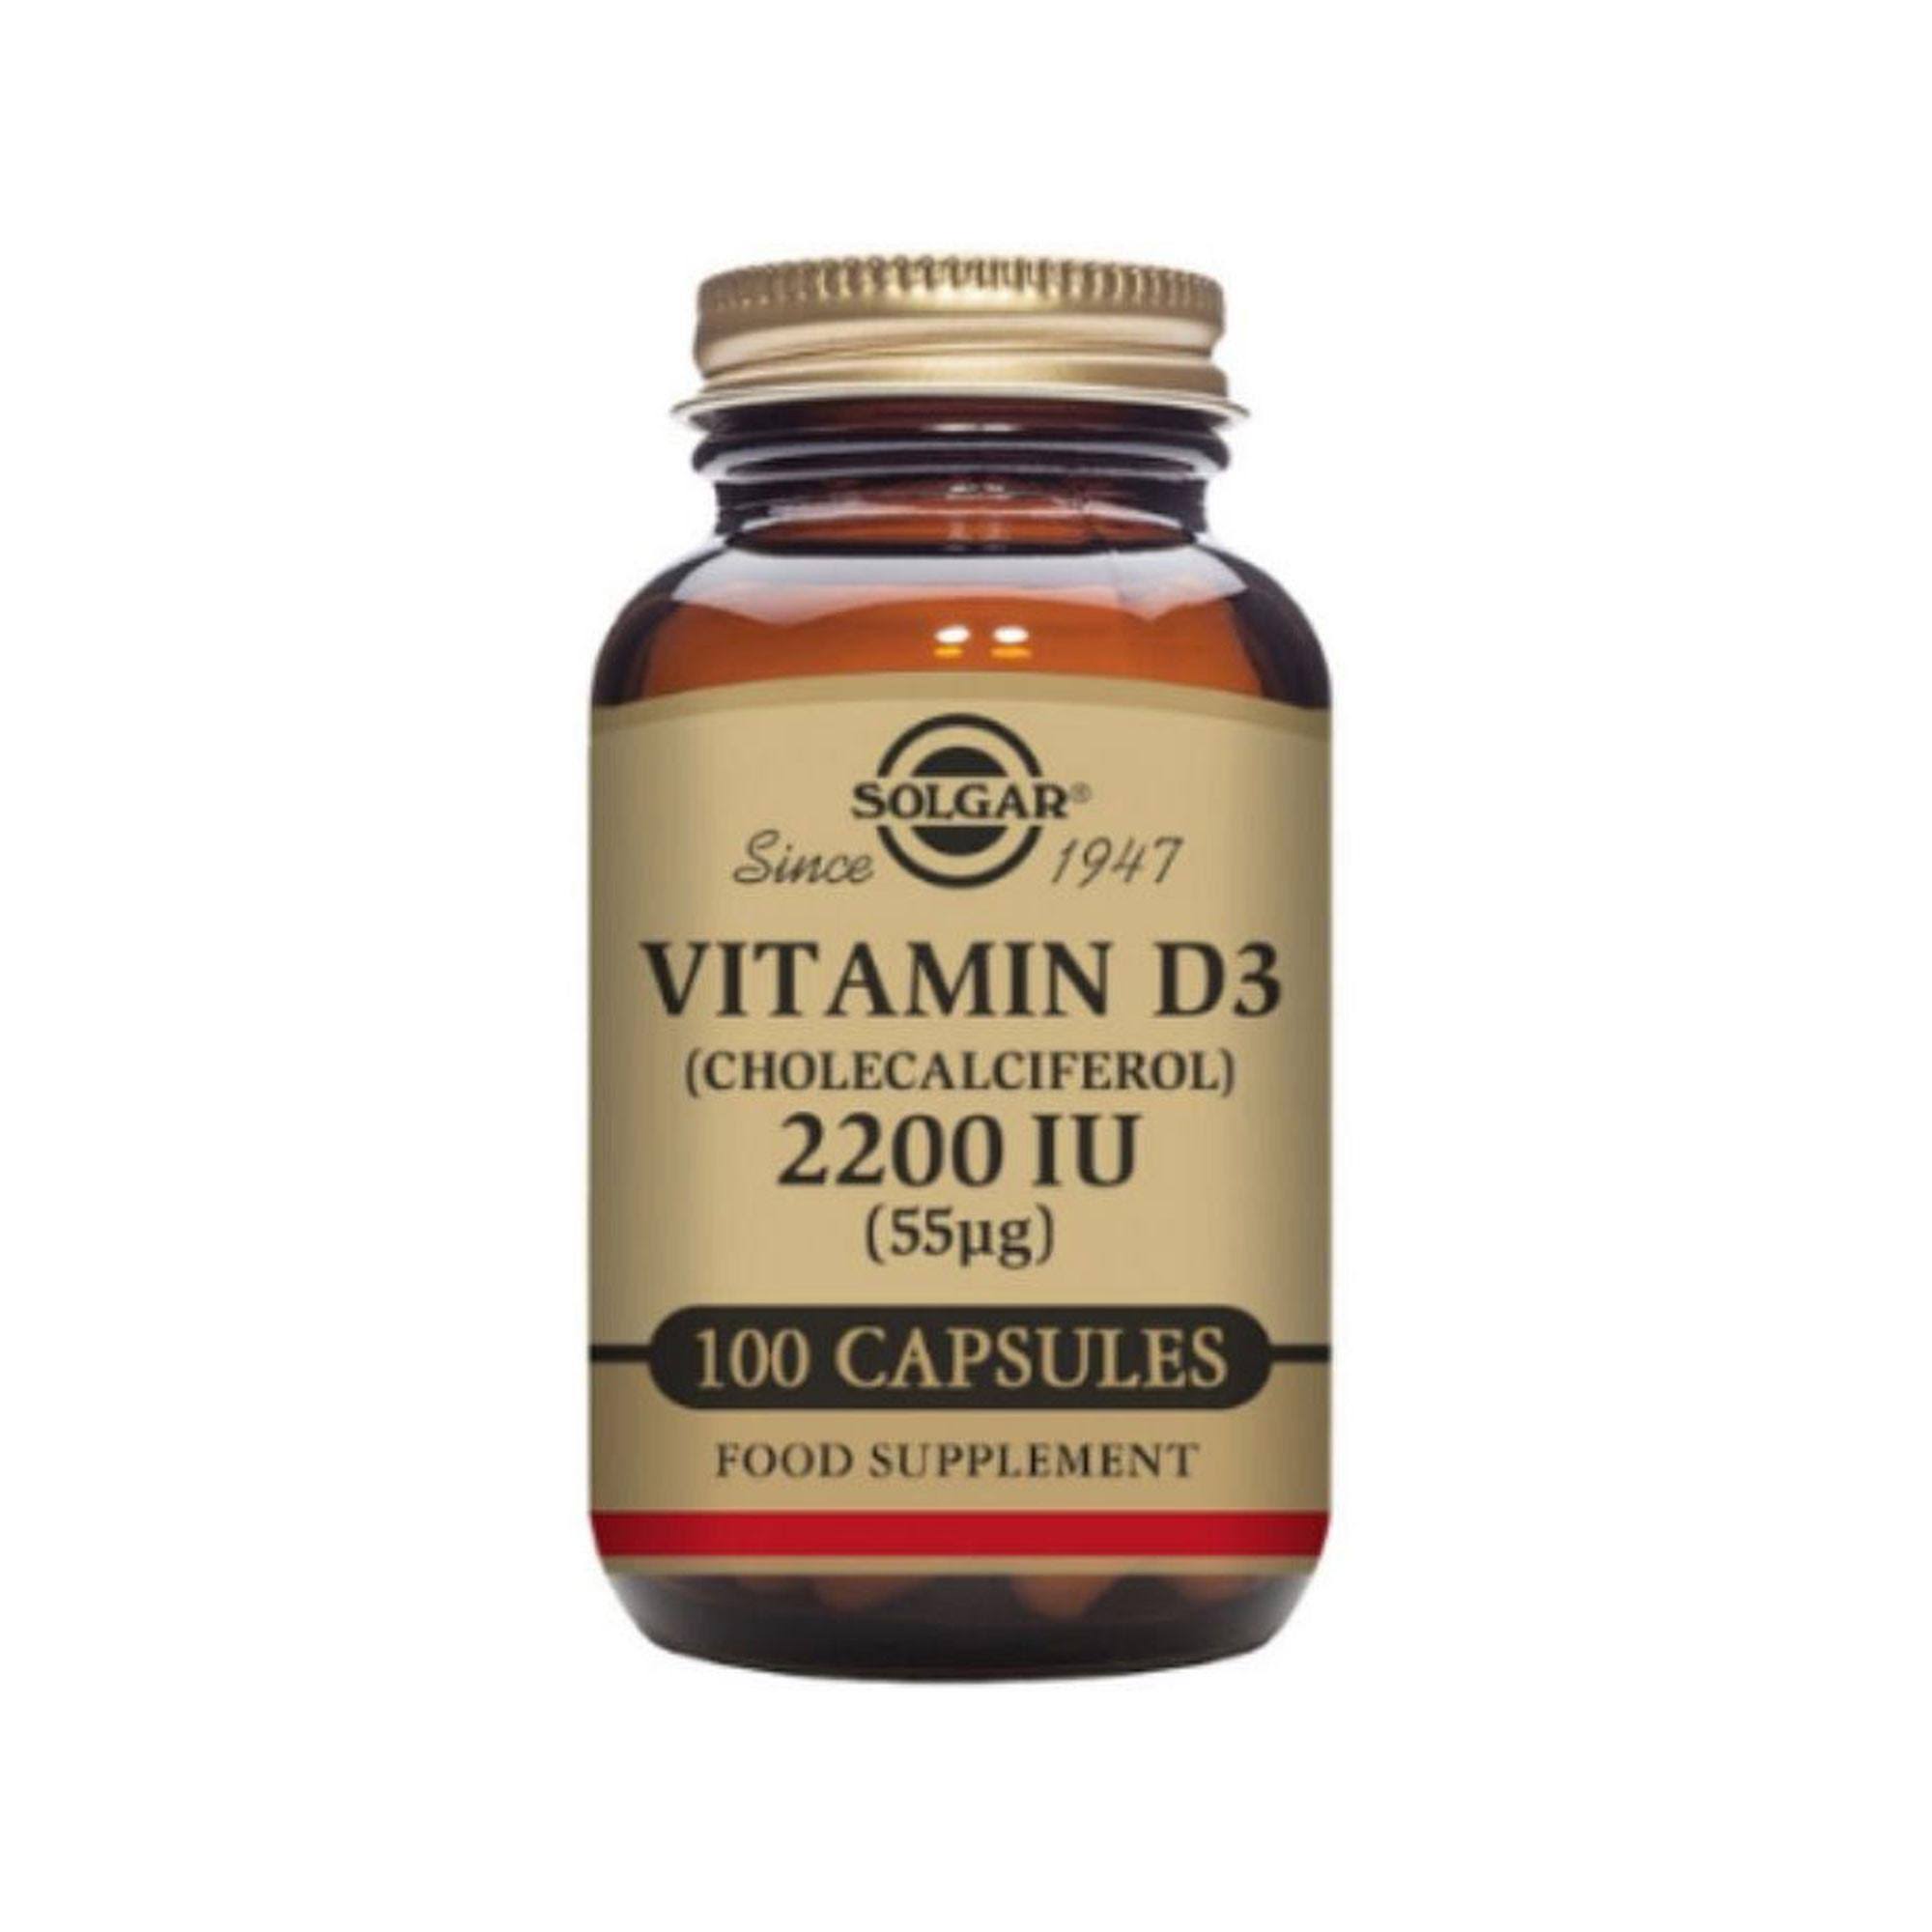 Solgar Vitamin D3 - 2,200 IU, 50 Vegetable Capsules